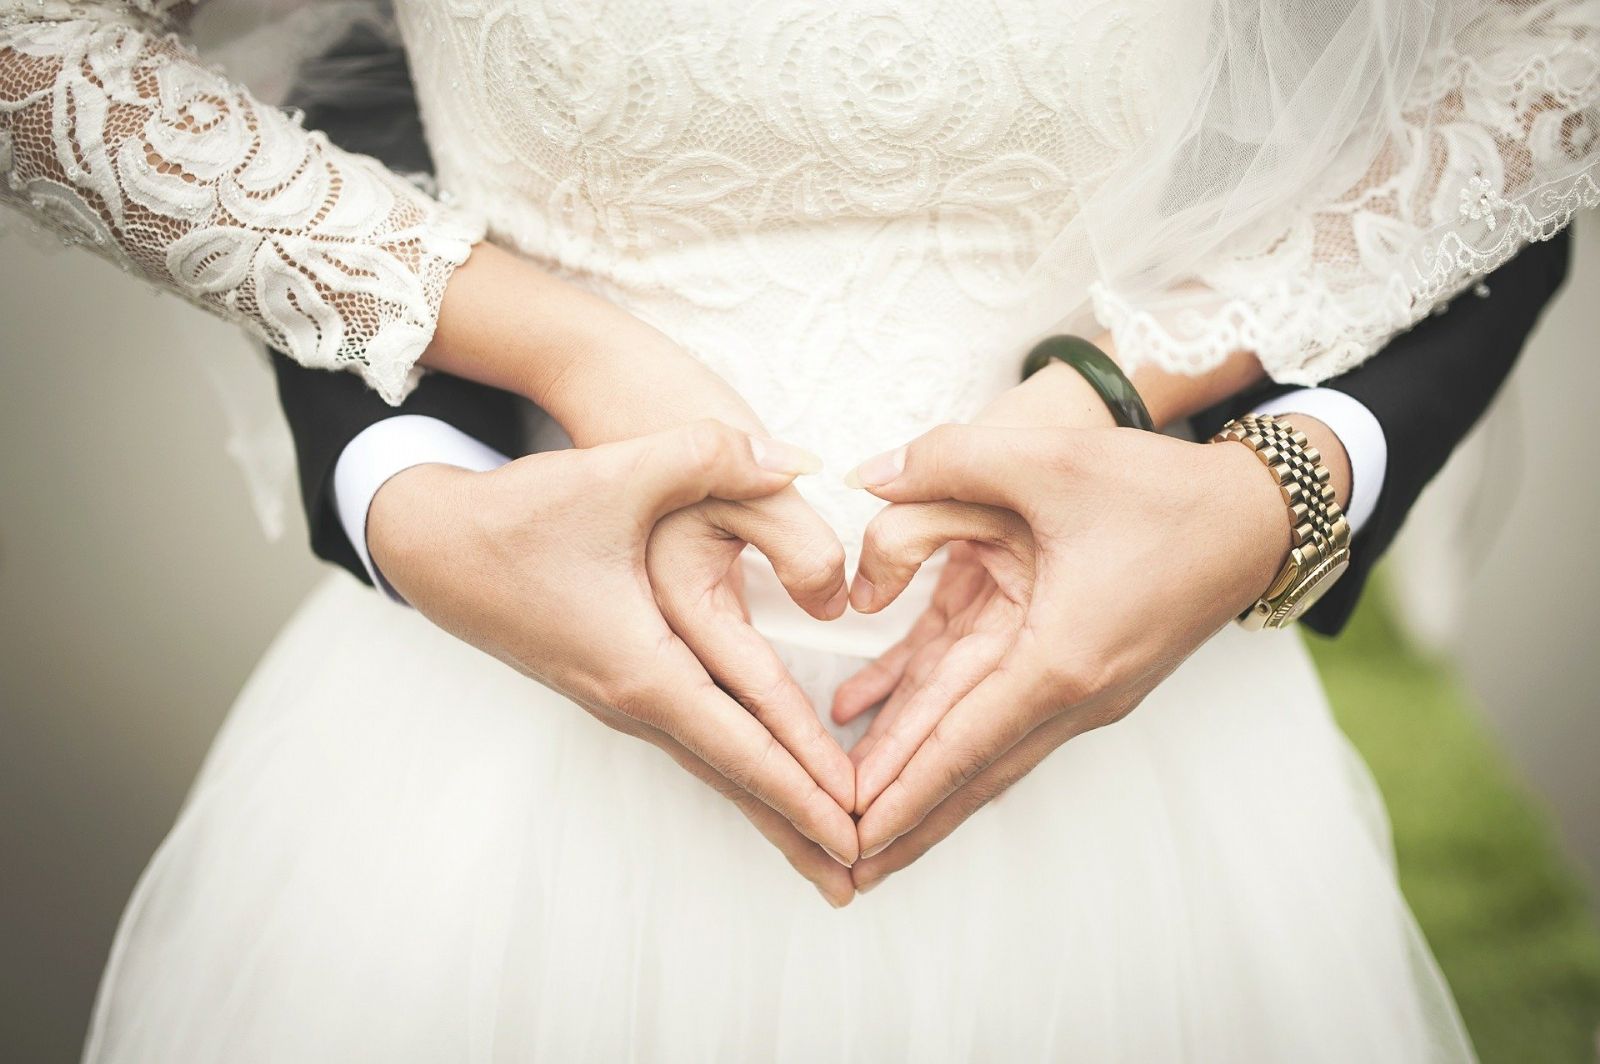 Svatební fotograf: rady a tipy, jak vybrat toho pravého